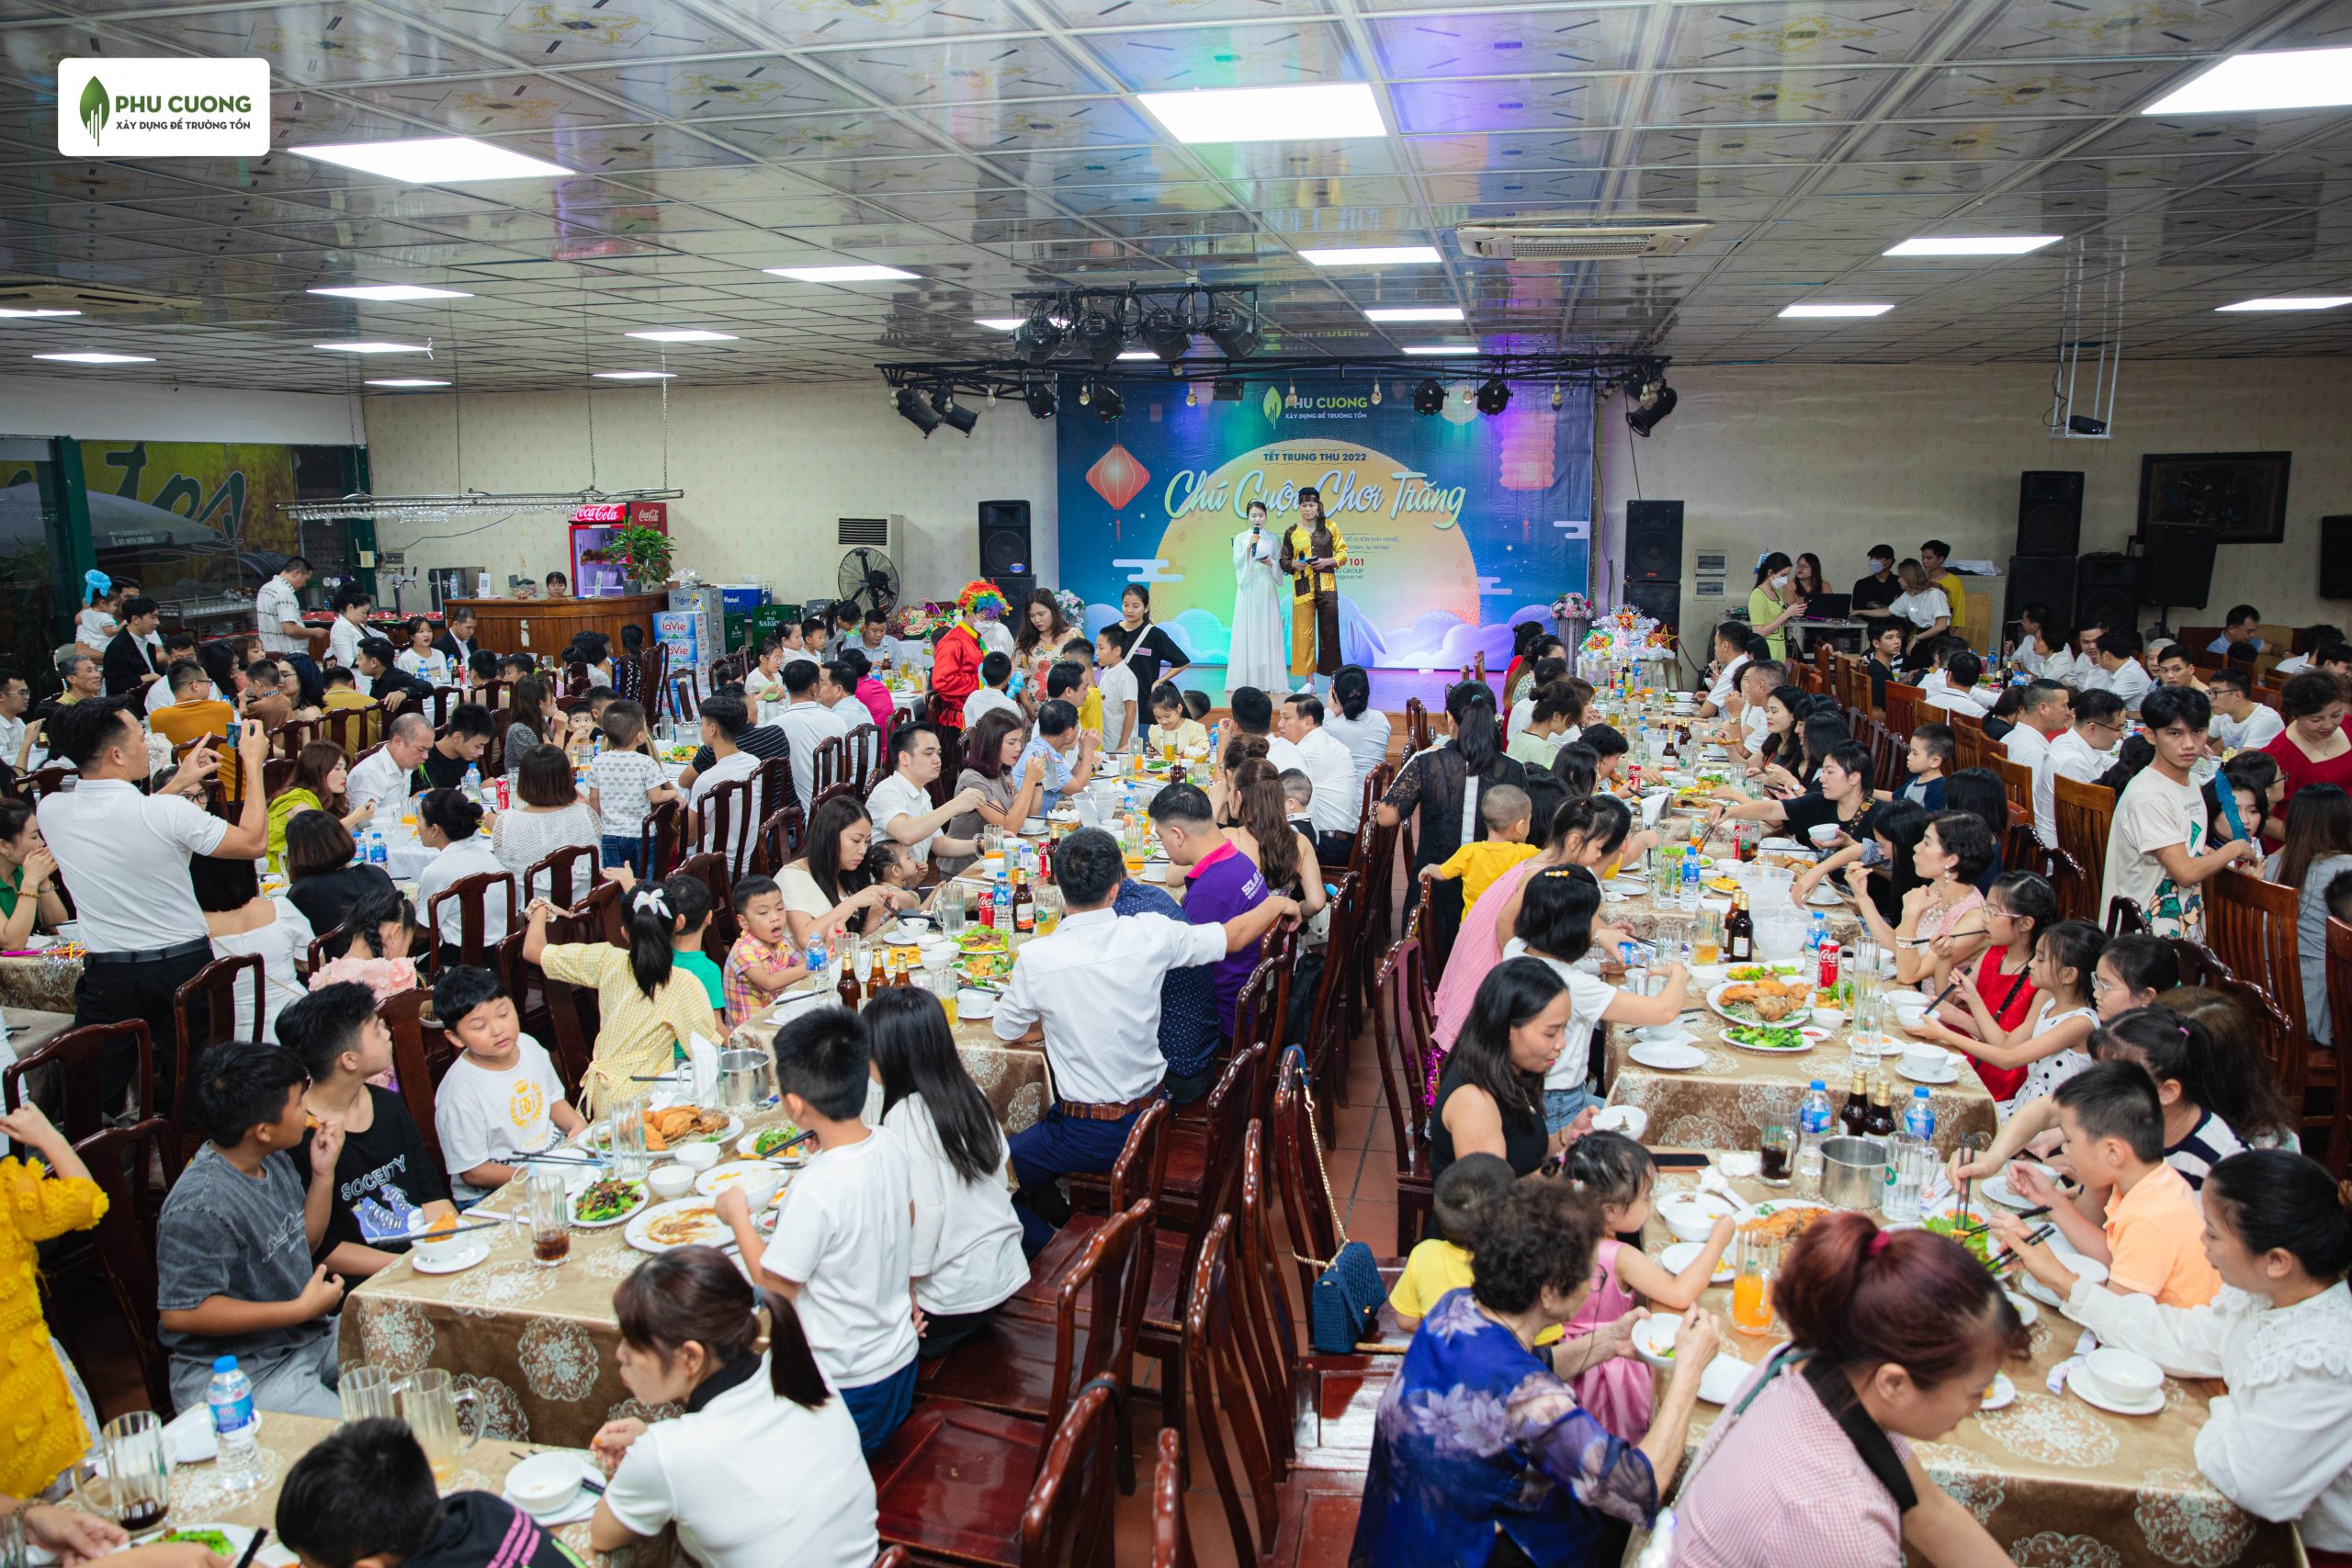 Bữa tiệc ấm áp của toàn thể thành viên Phú Cường Group cùng gia đình